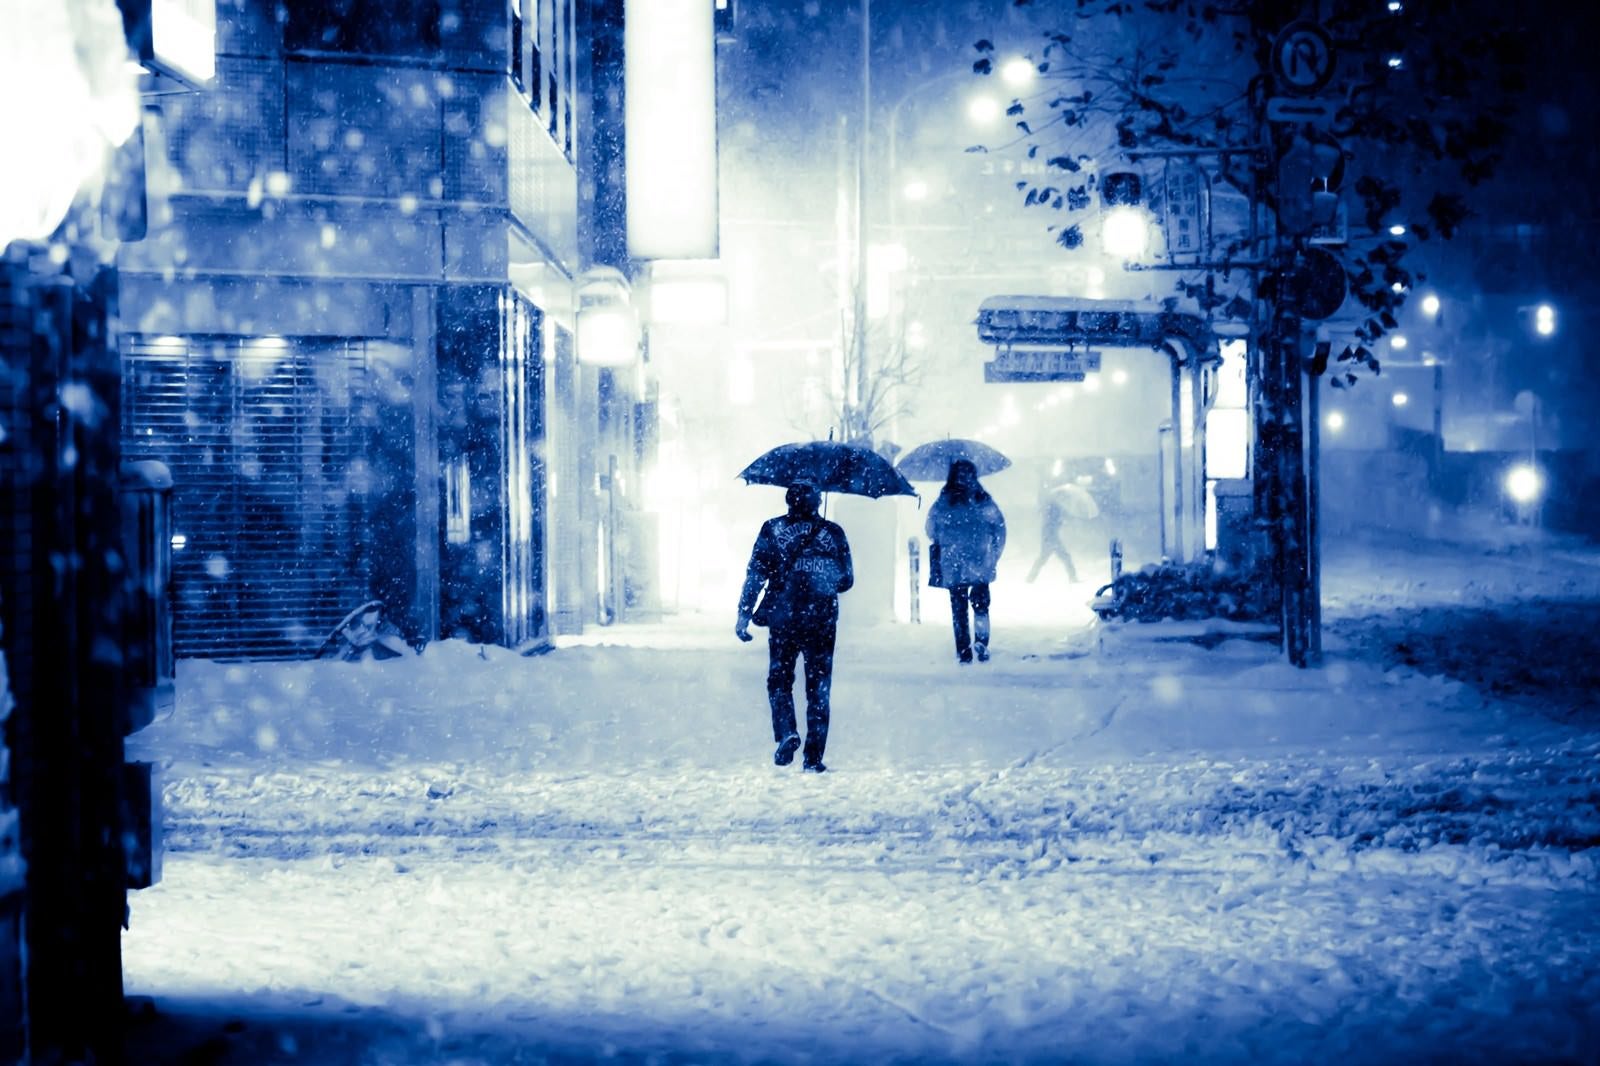 「積雪で電車が止まり傘を差して家路に向かう」の写真